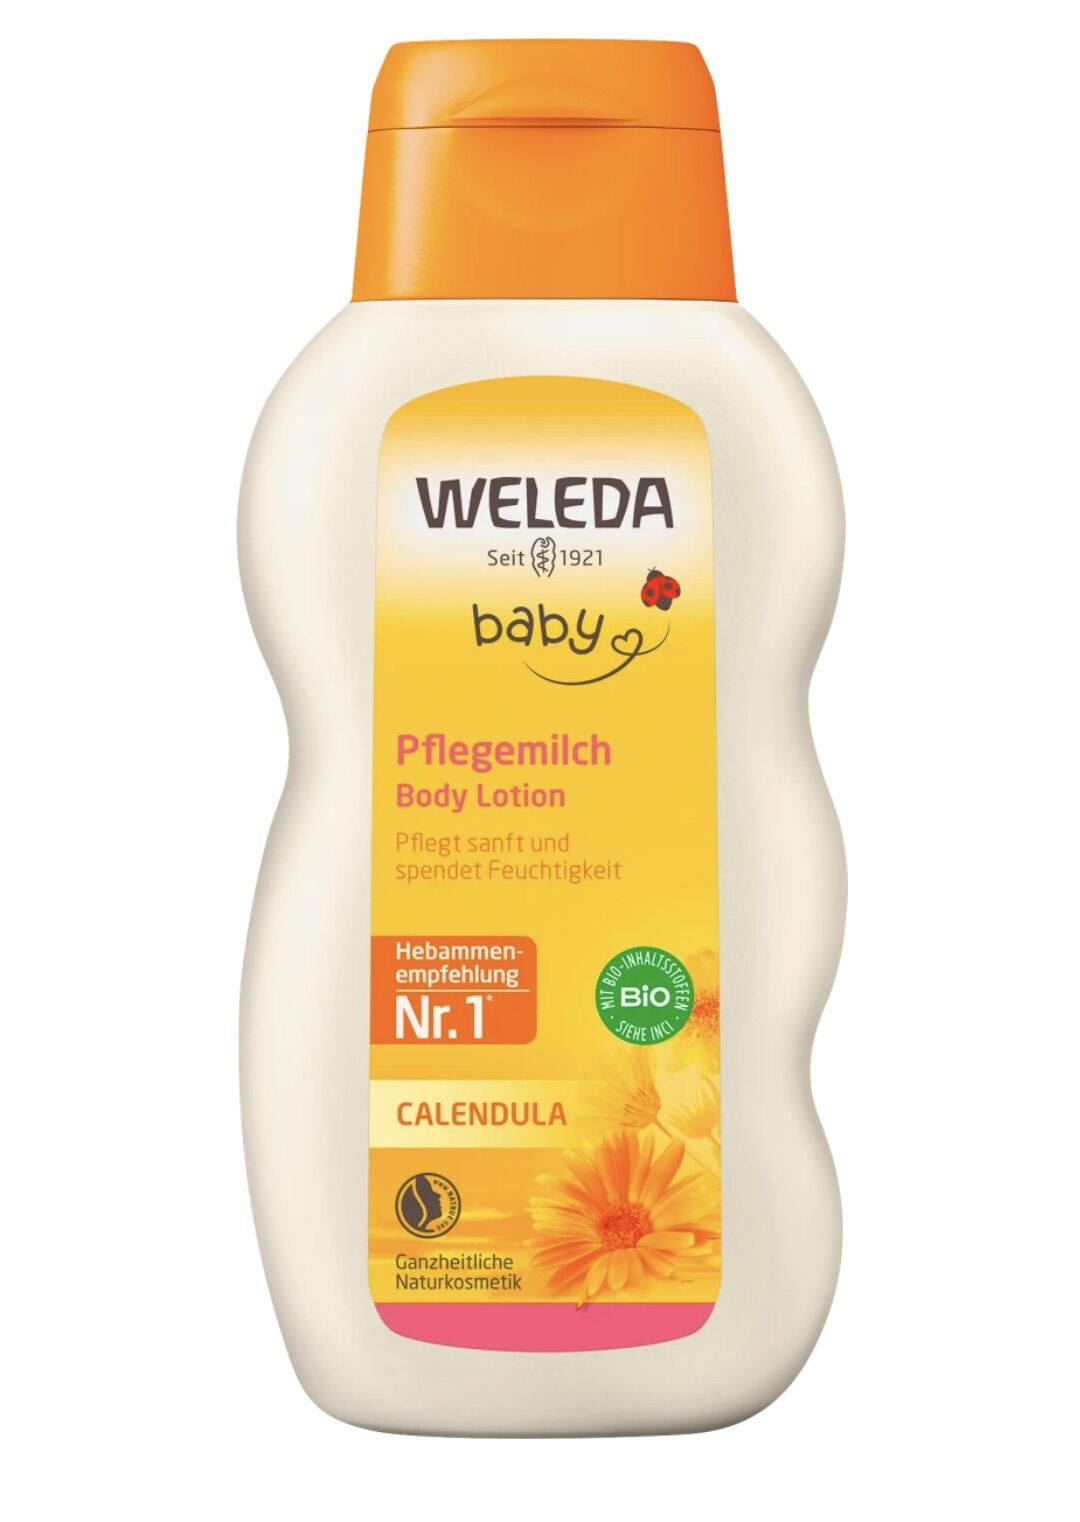 [Bill Đức] Sữa dưỡng thể Weleda Calendula baby body lotion, 200 ml thumbnail